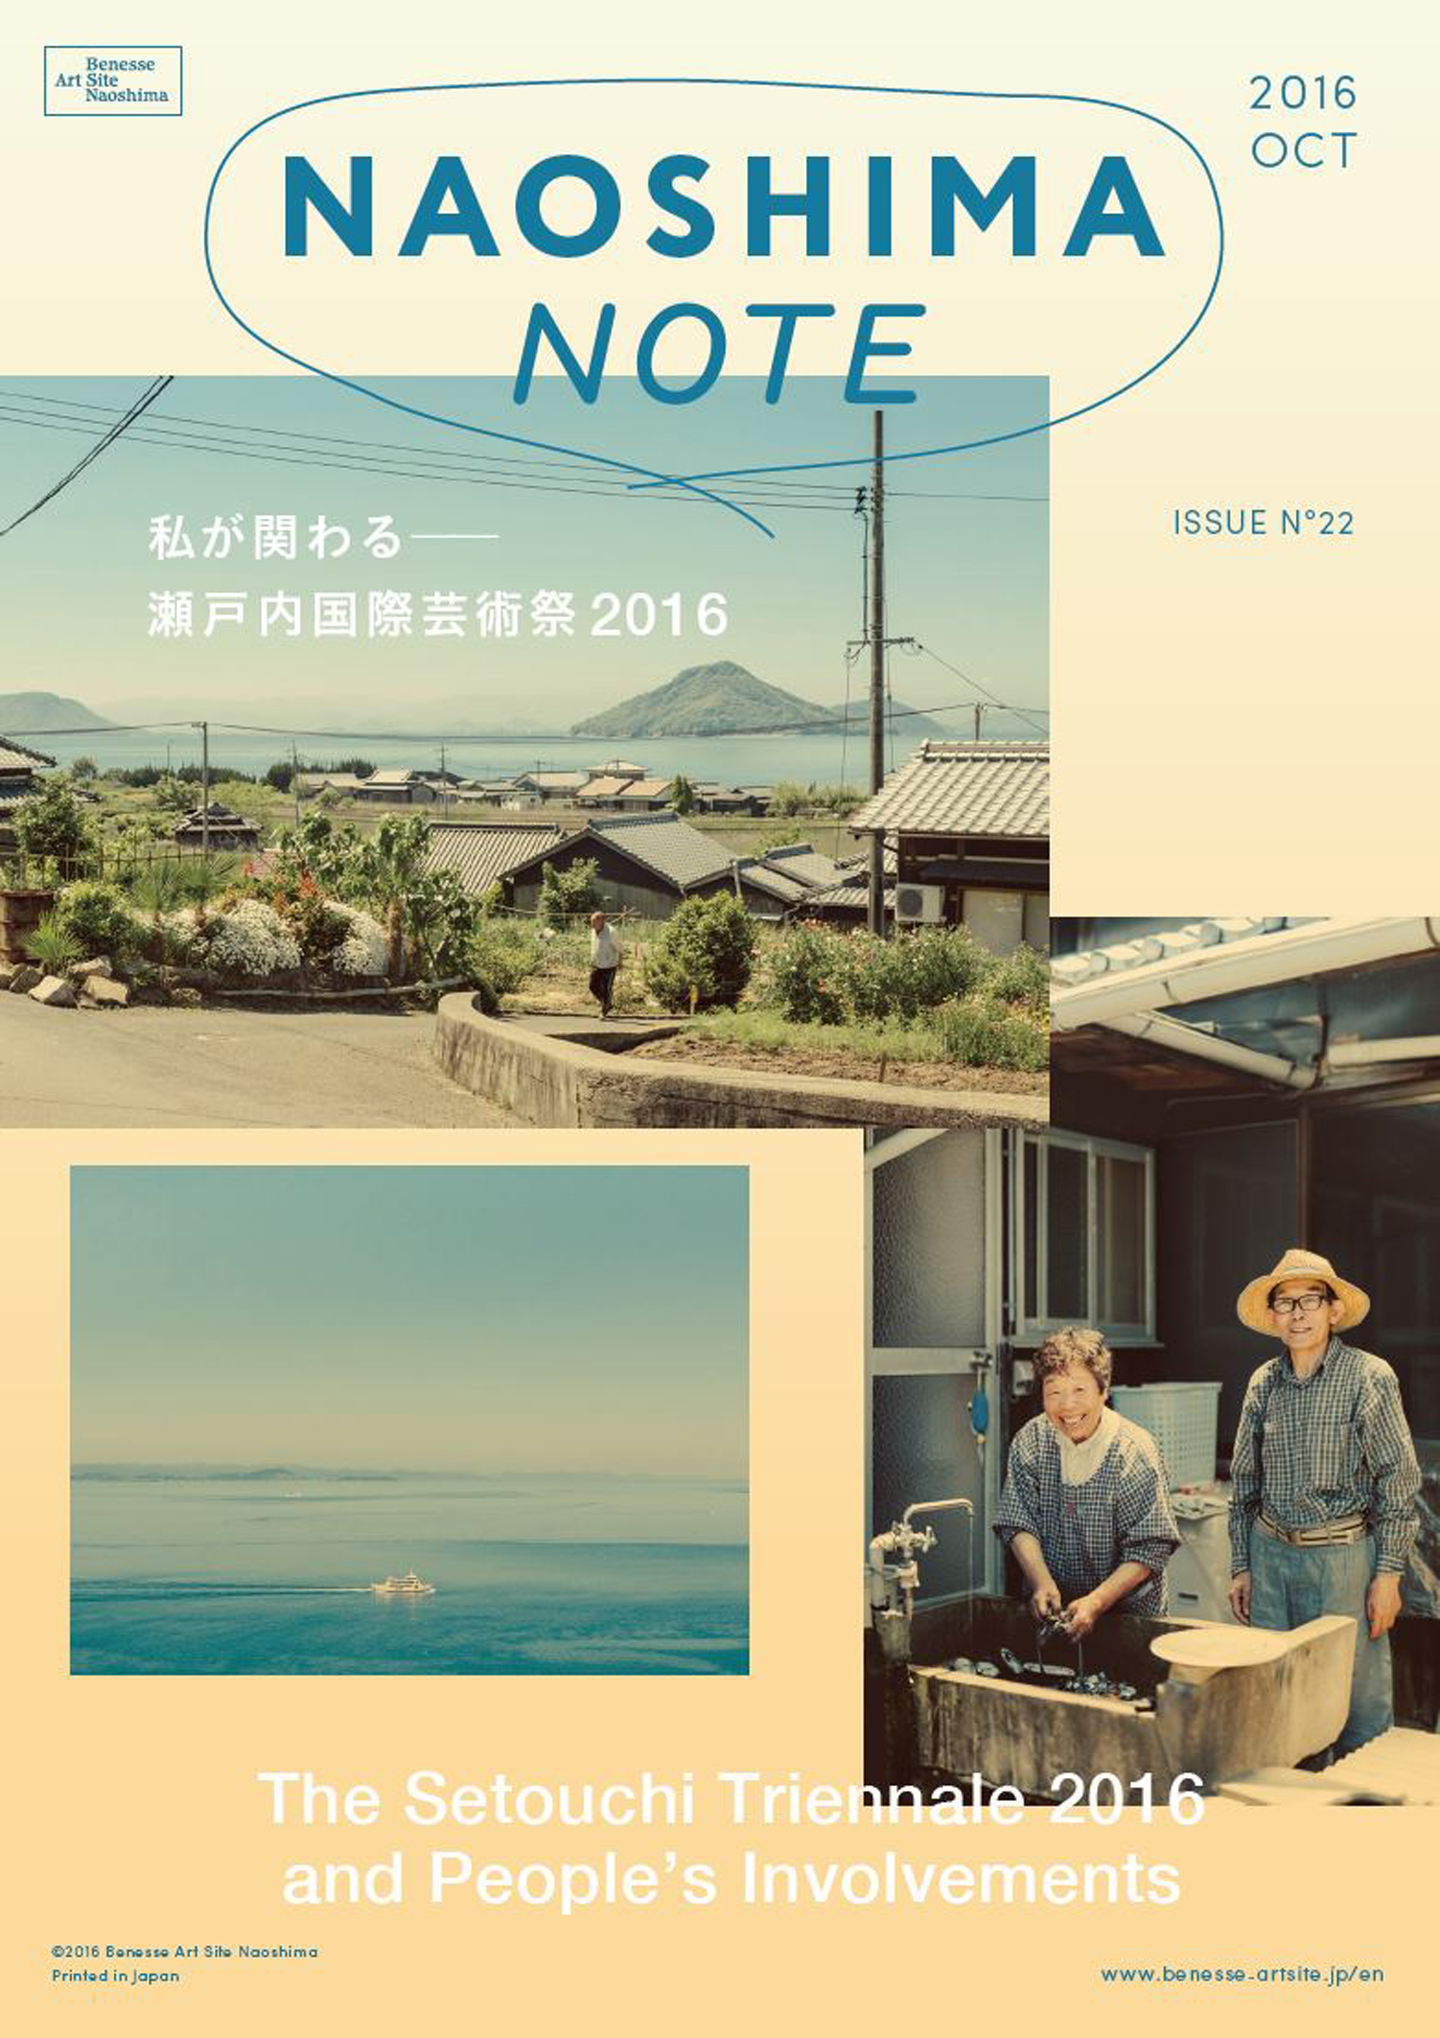 nn201610_cover_1440.JPG